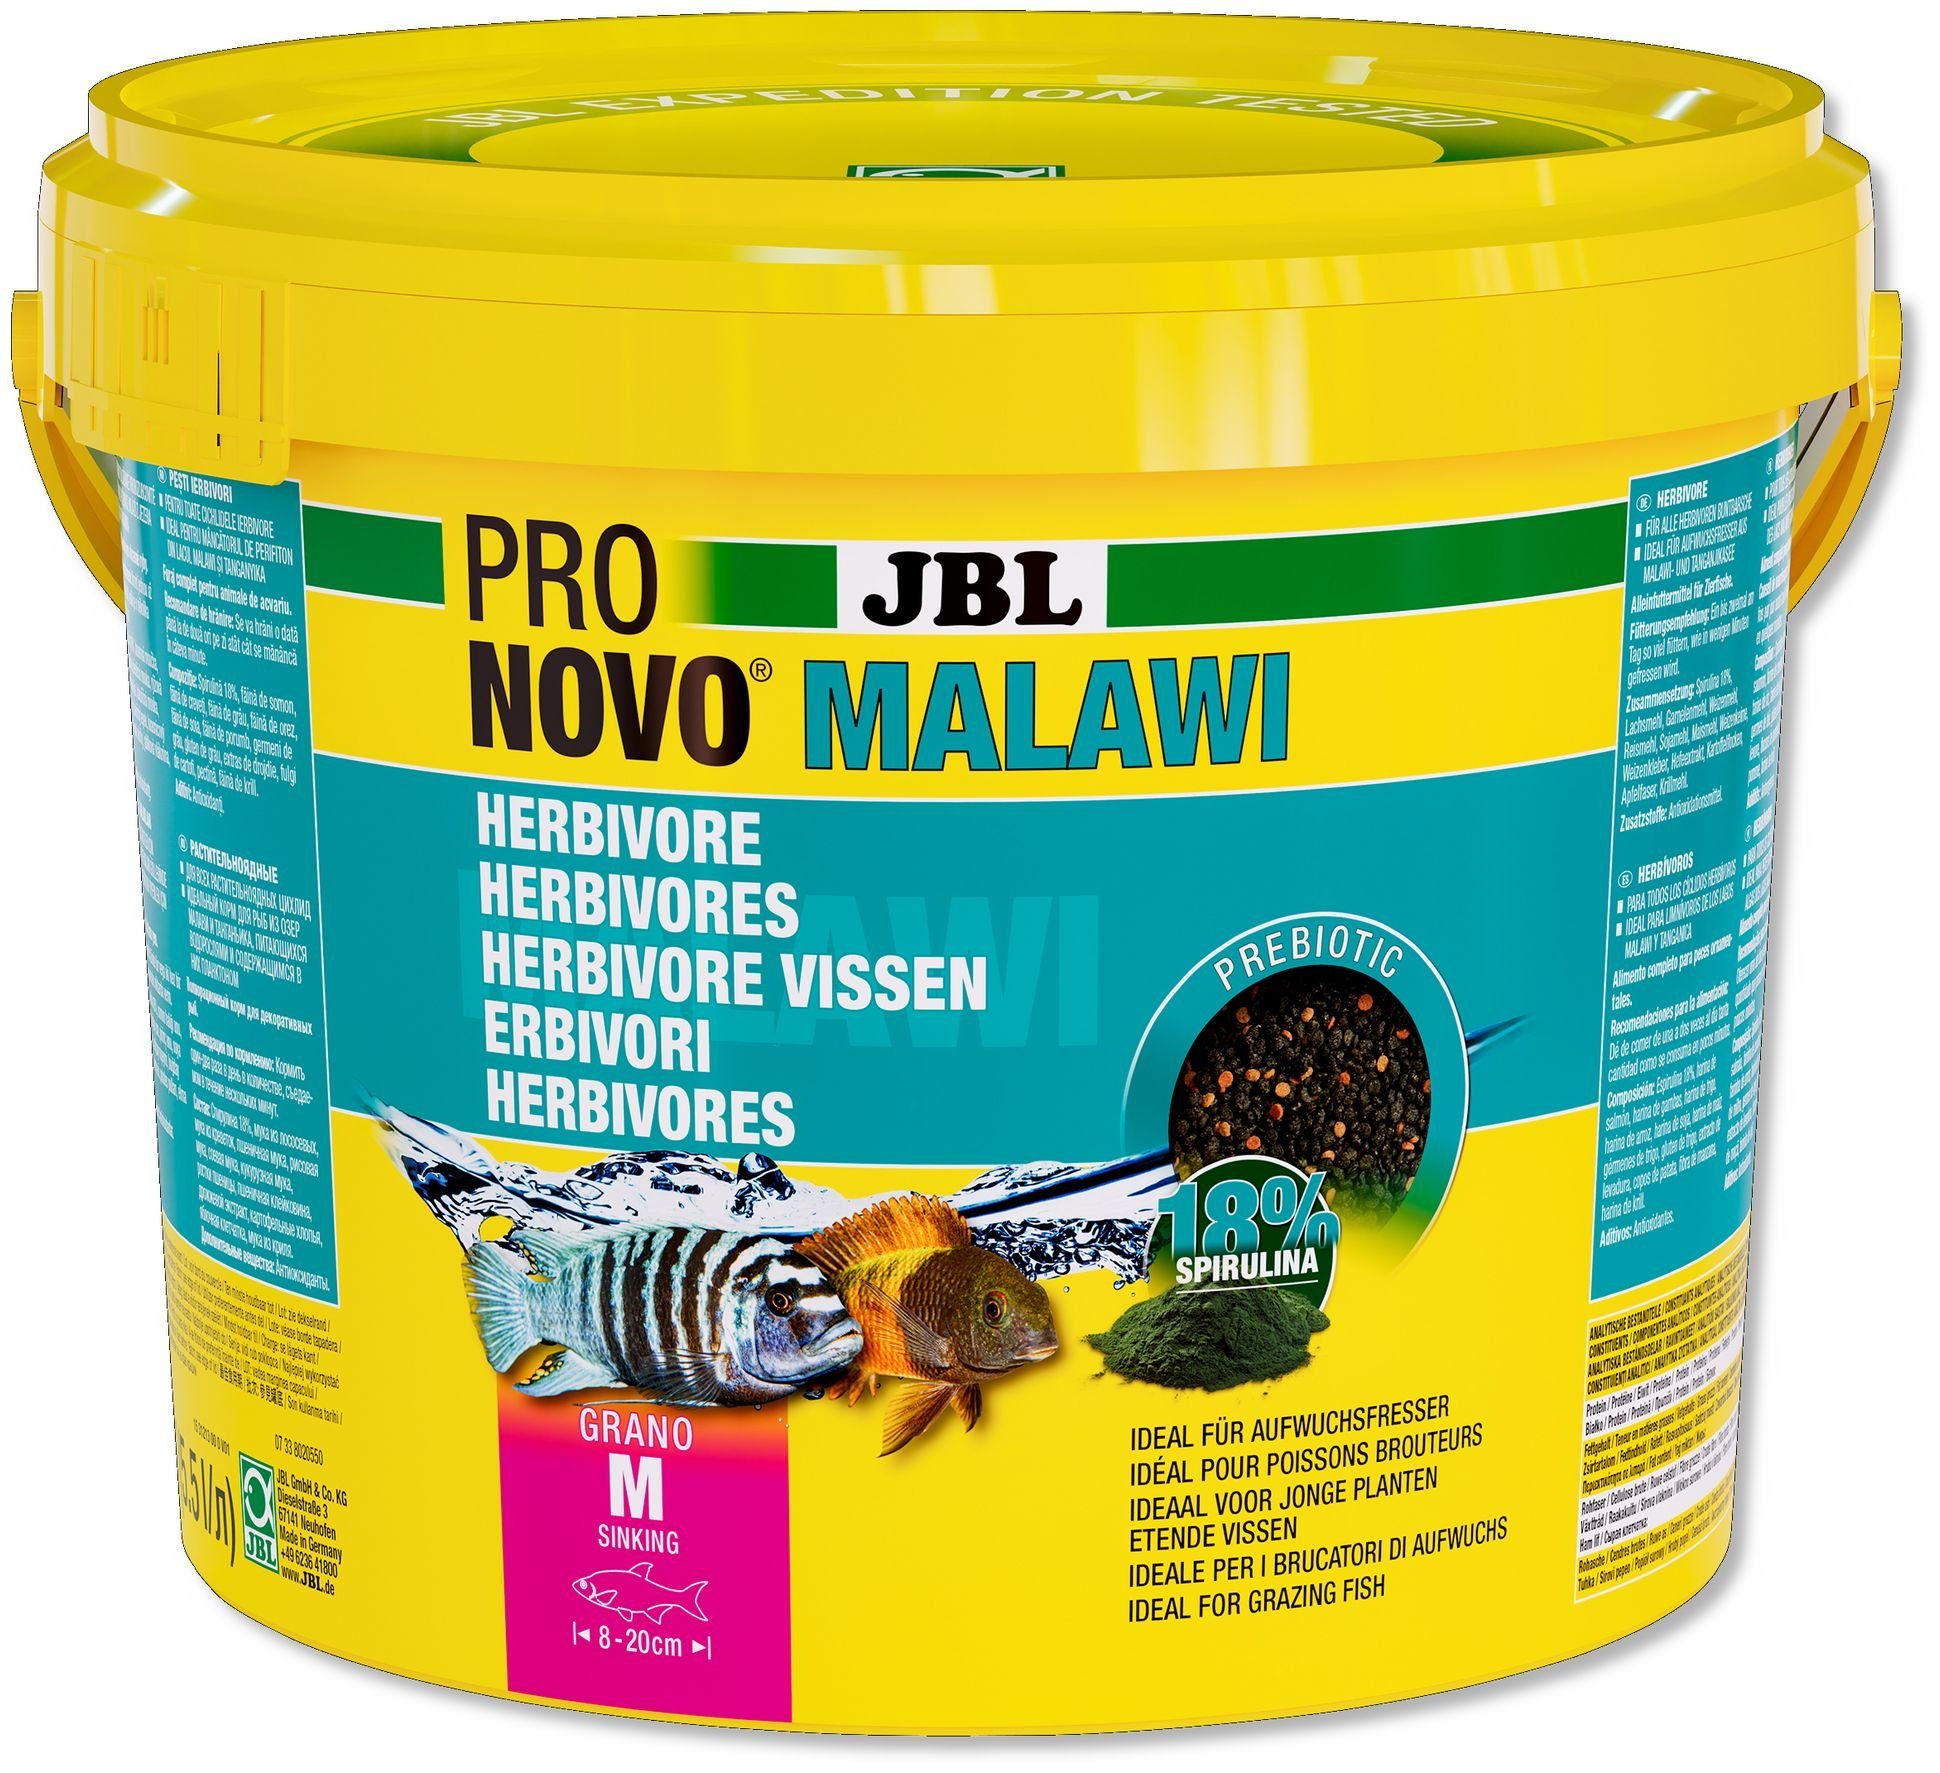 JBL GmbH & Co. KG Aquariendeko JBL PRONOVO MALAWI GRANO M 5500 ml